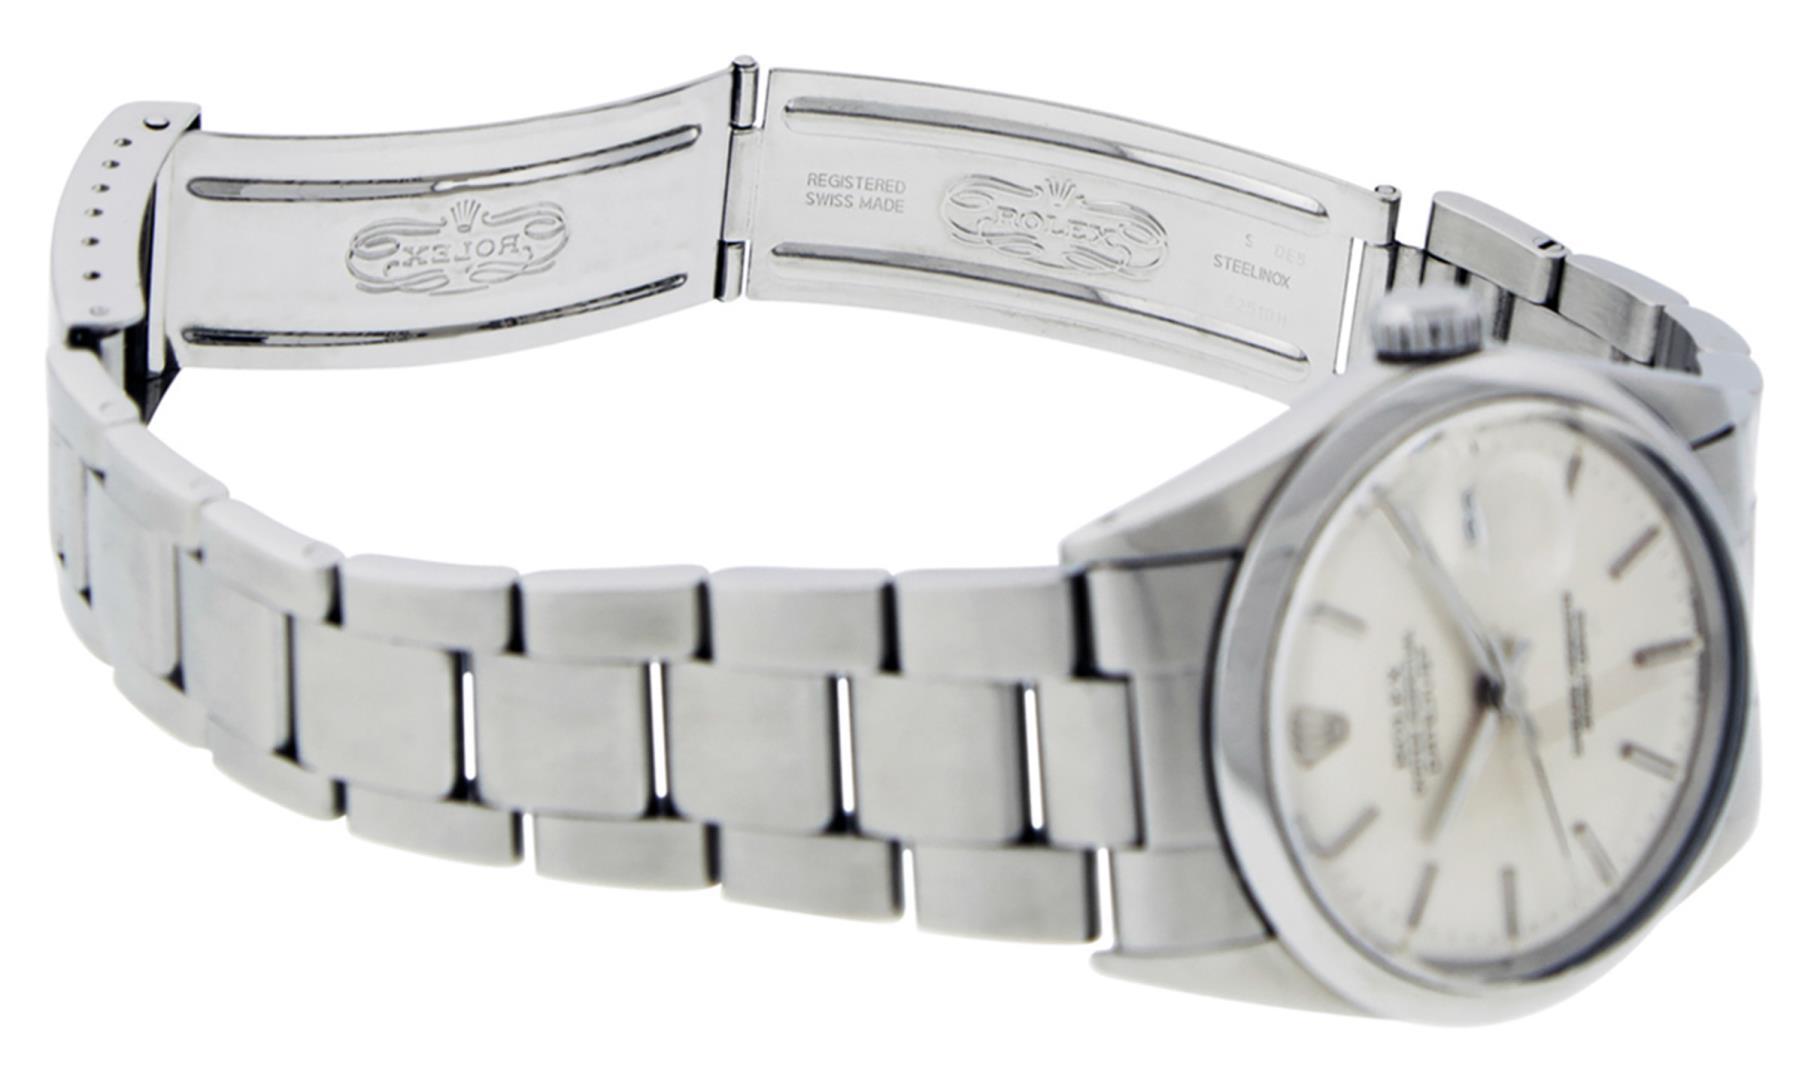 Rolex Men's Stainless Steel Silver Index Datejust Wristwatch